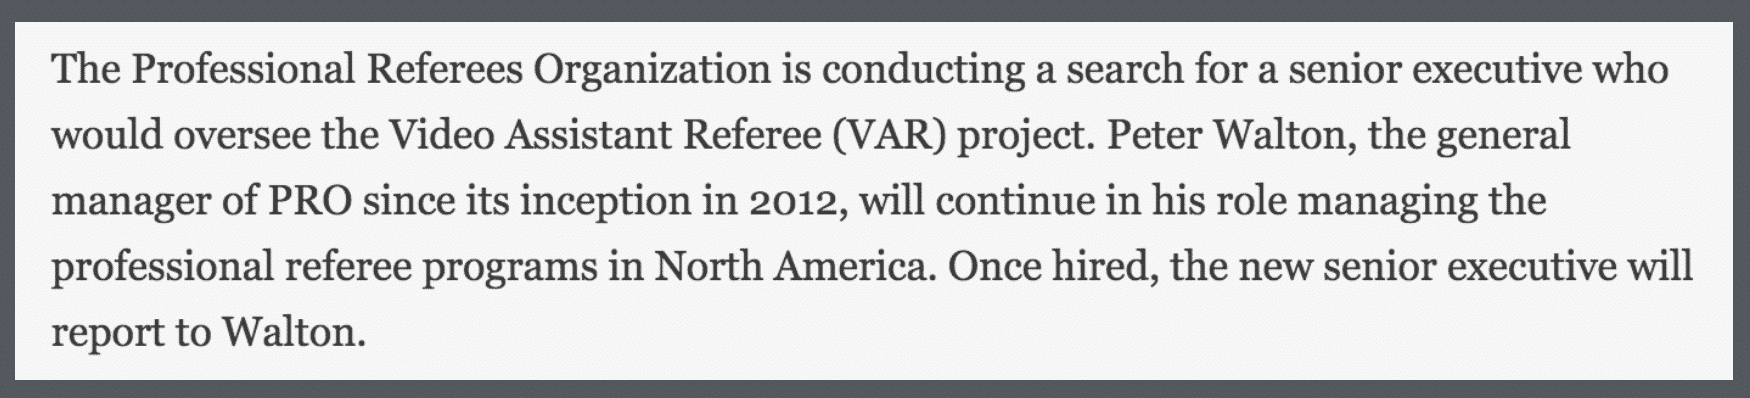 Déclaration de la Professional Referee Organization (PRO). Source : mlssoccer.com